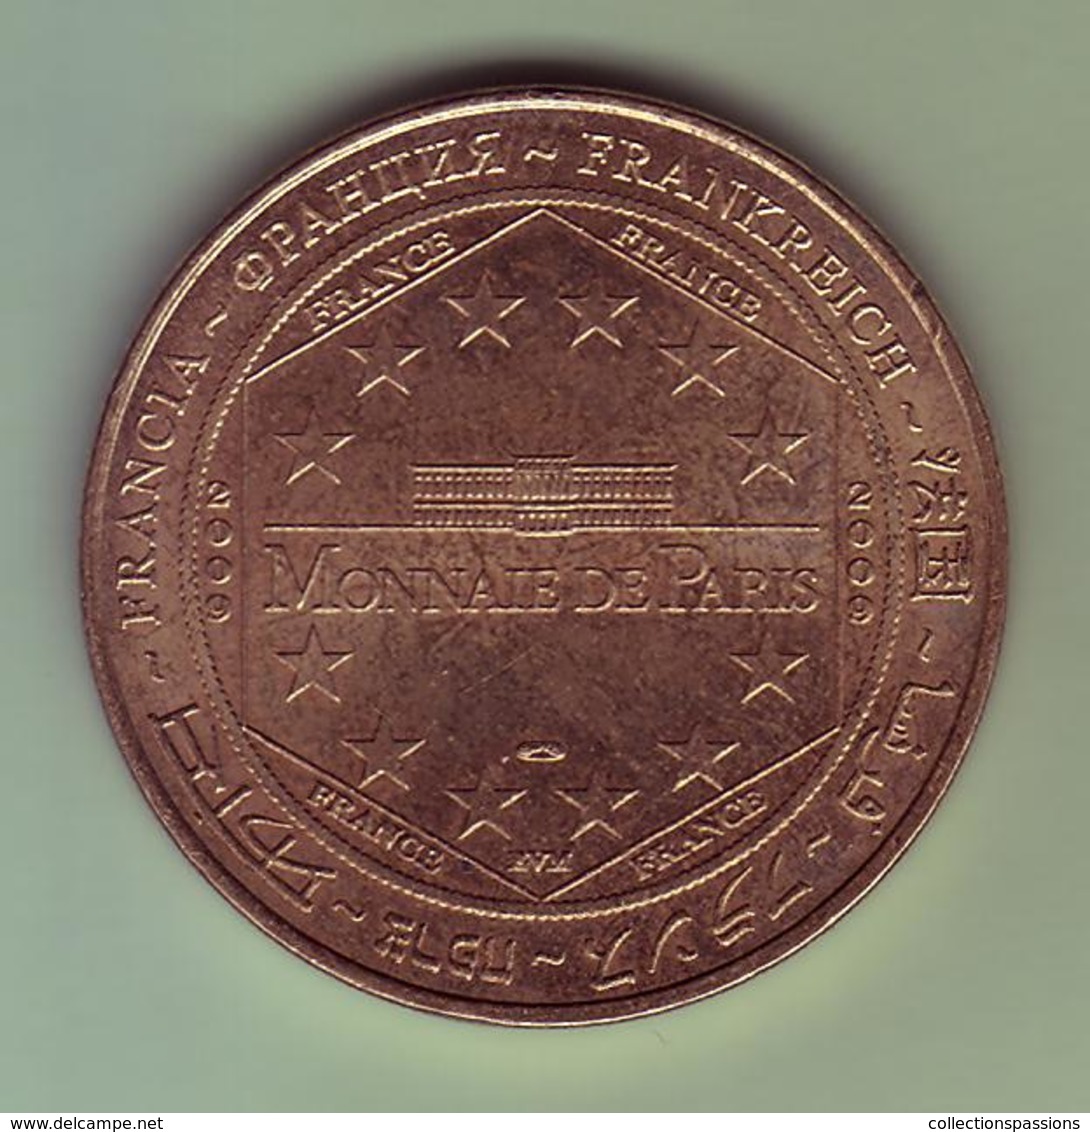 Médaille. Jeton Touristique - Monnaie De Paris - DRÔME - Tour De Crest - 2009 - - 2009